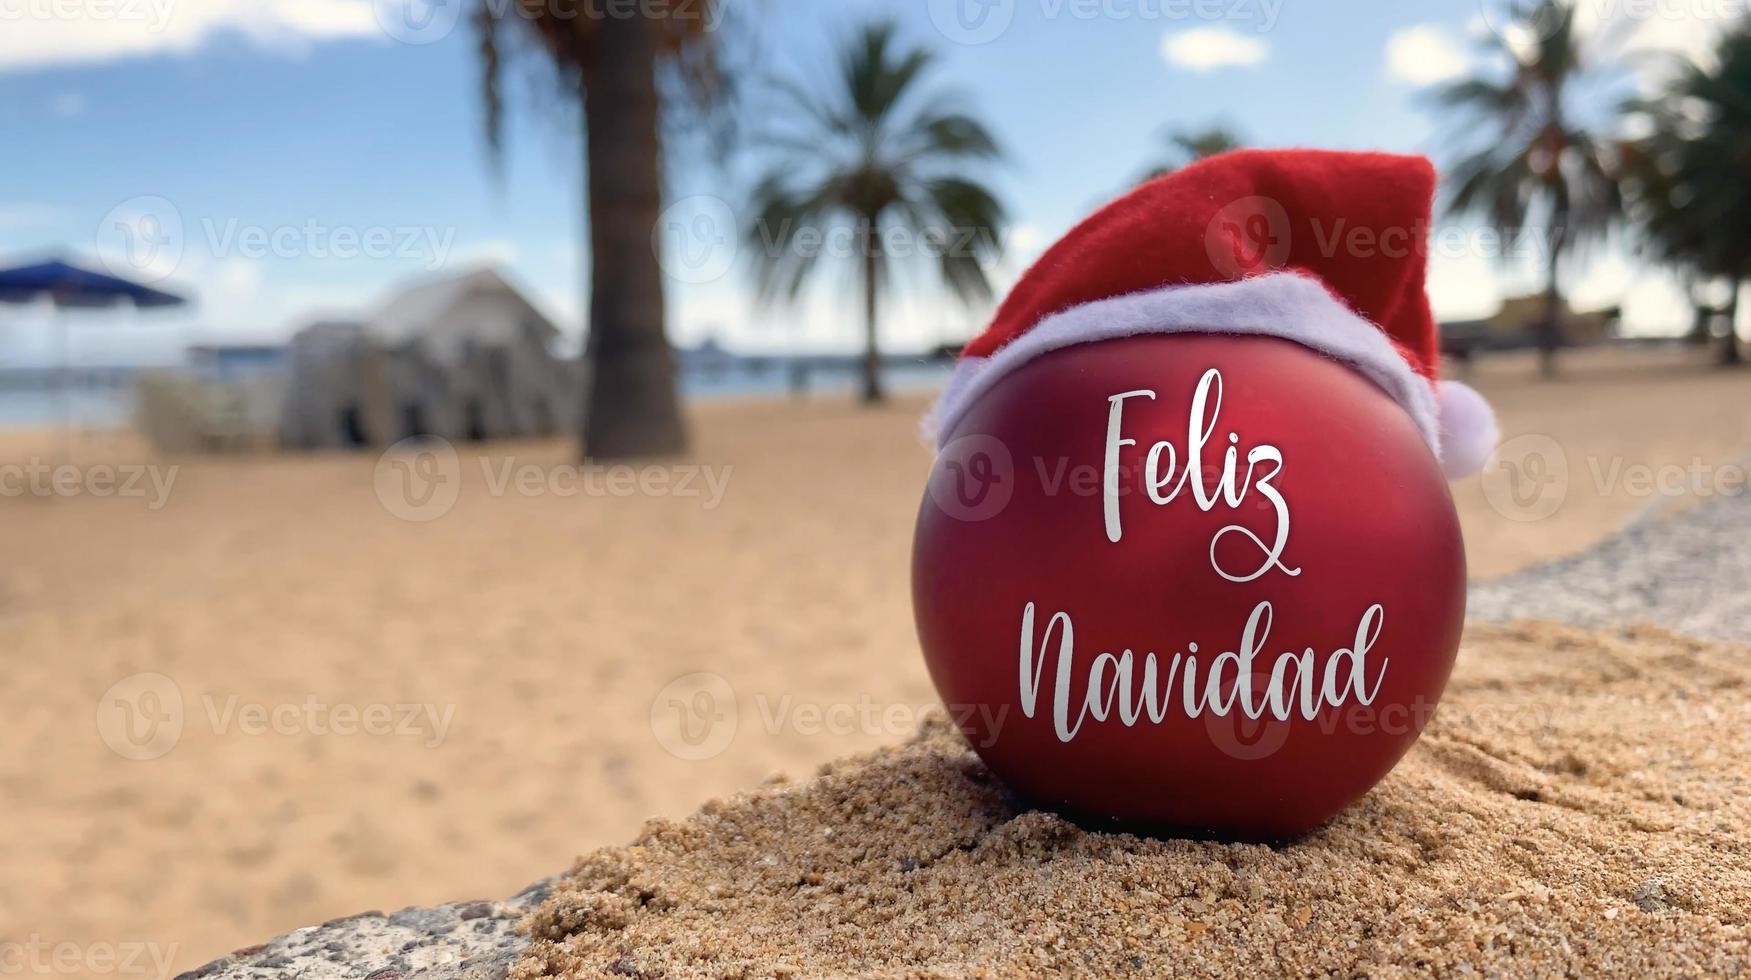 Kerstmis bom in santa's hoed met woorden vrolijk Kerstmis in Spaans Aan de strand aan het liegen Aan de zand met palm bomen en blauw lucht Aan de achtergrond. vrolijk Kerstmis van paradijs, exotisch eiland. foto